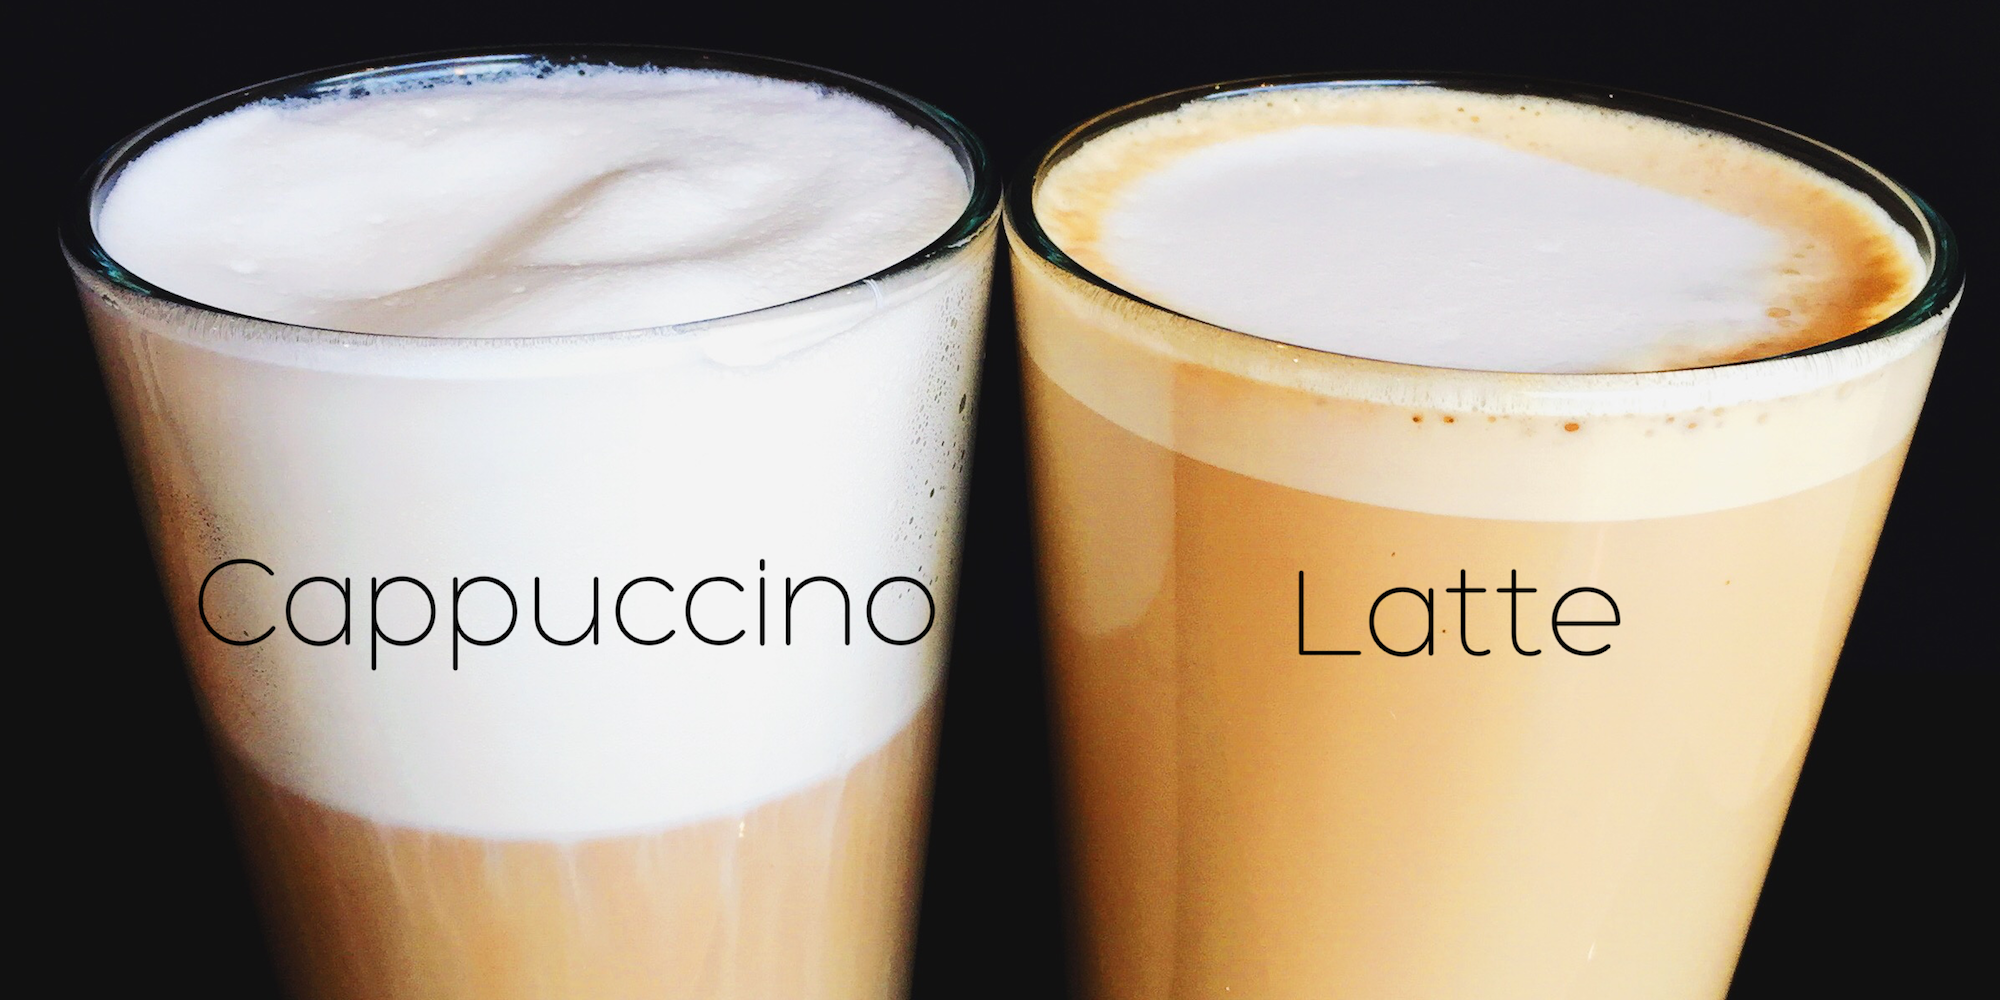 So sánh cà phê latte với Cappuccino